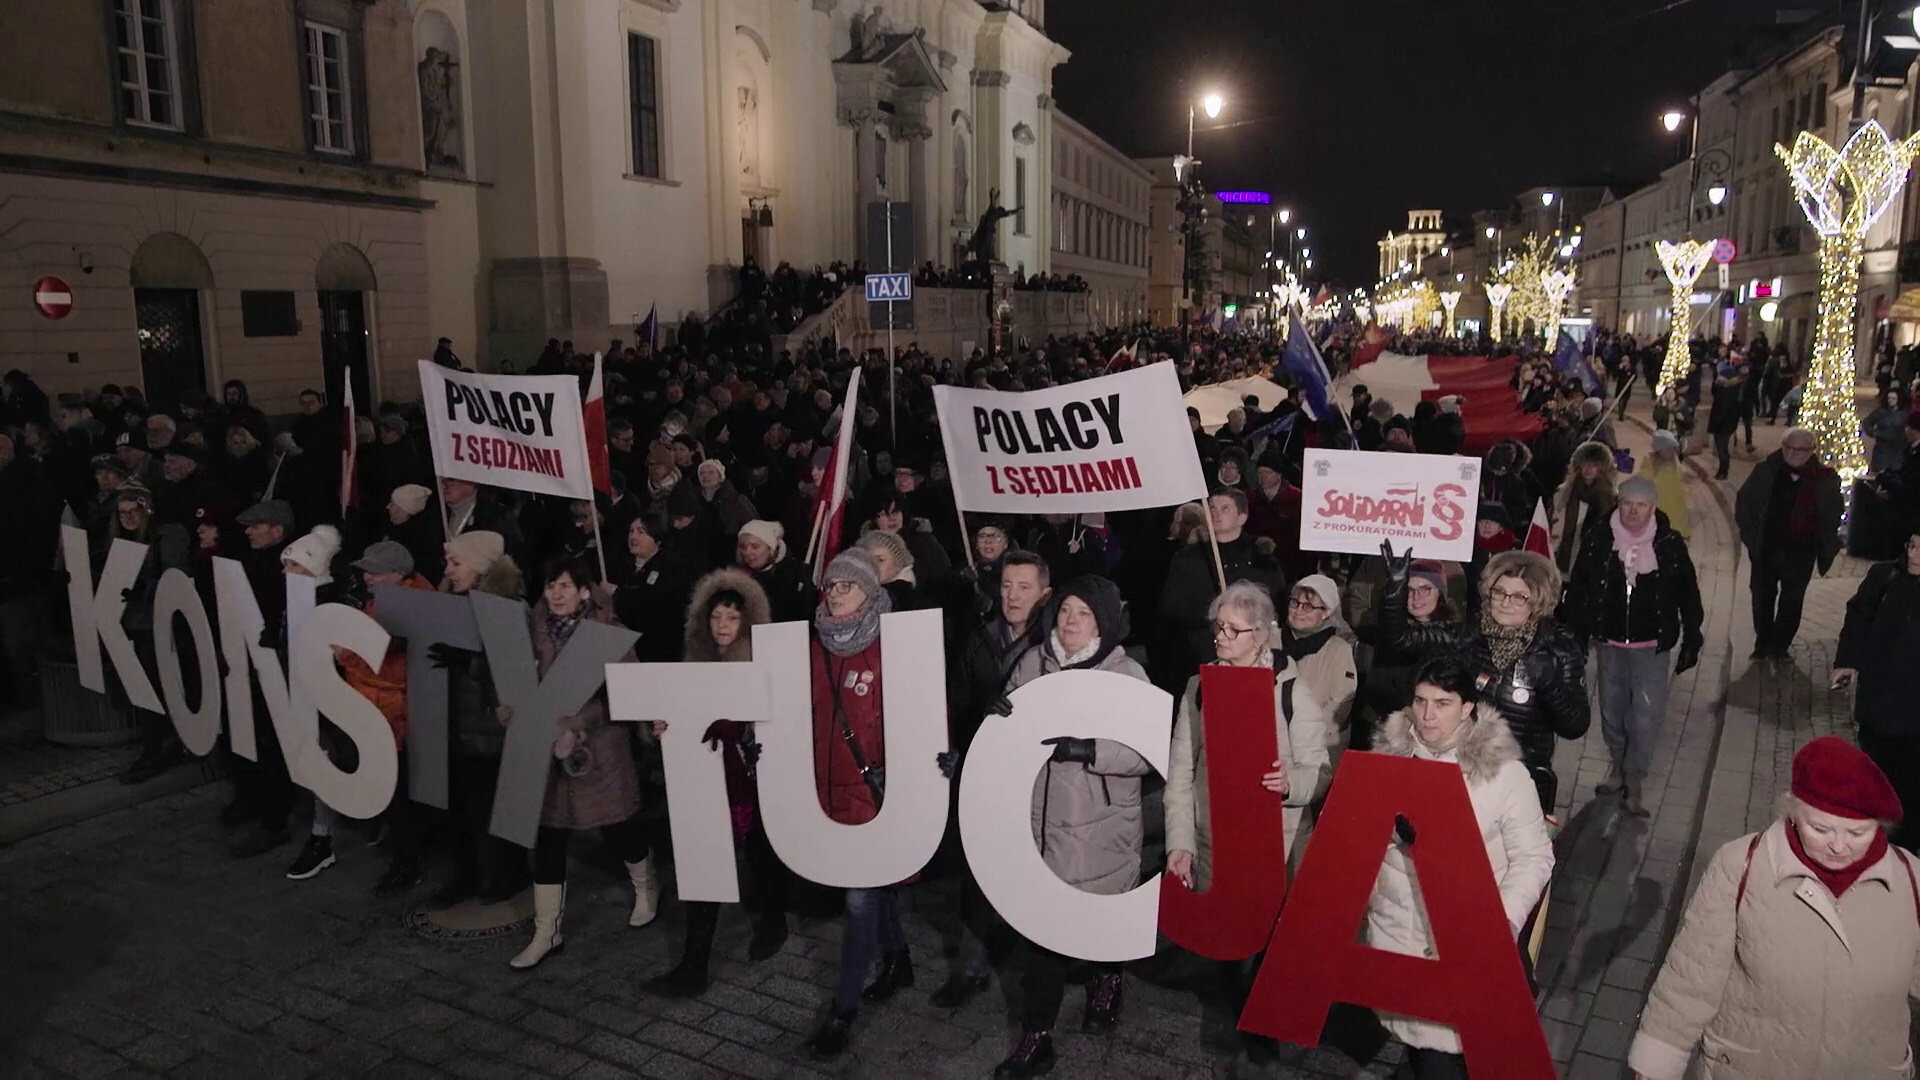 Andrzej Duda dnes oponuje těm, kteří ho vynesli k moci